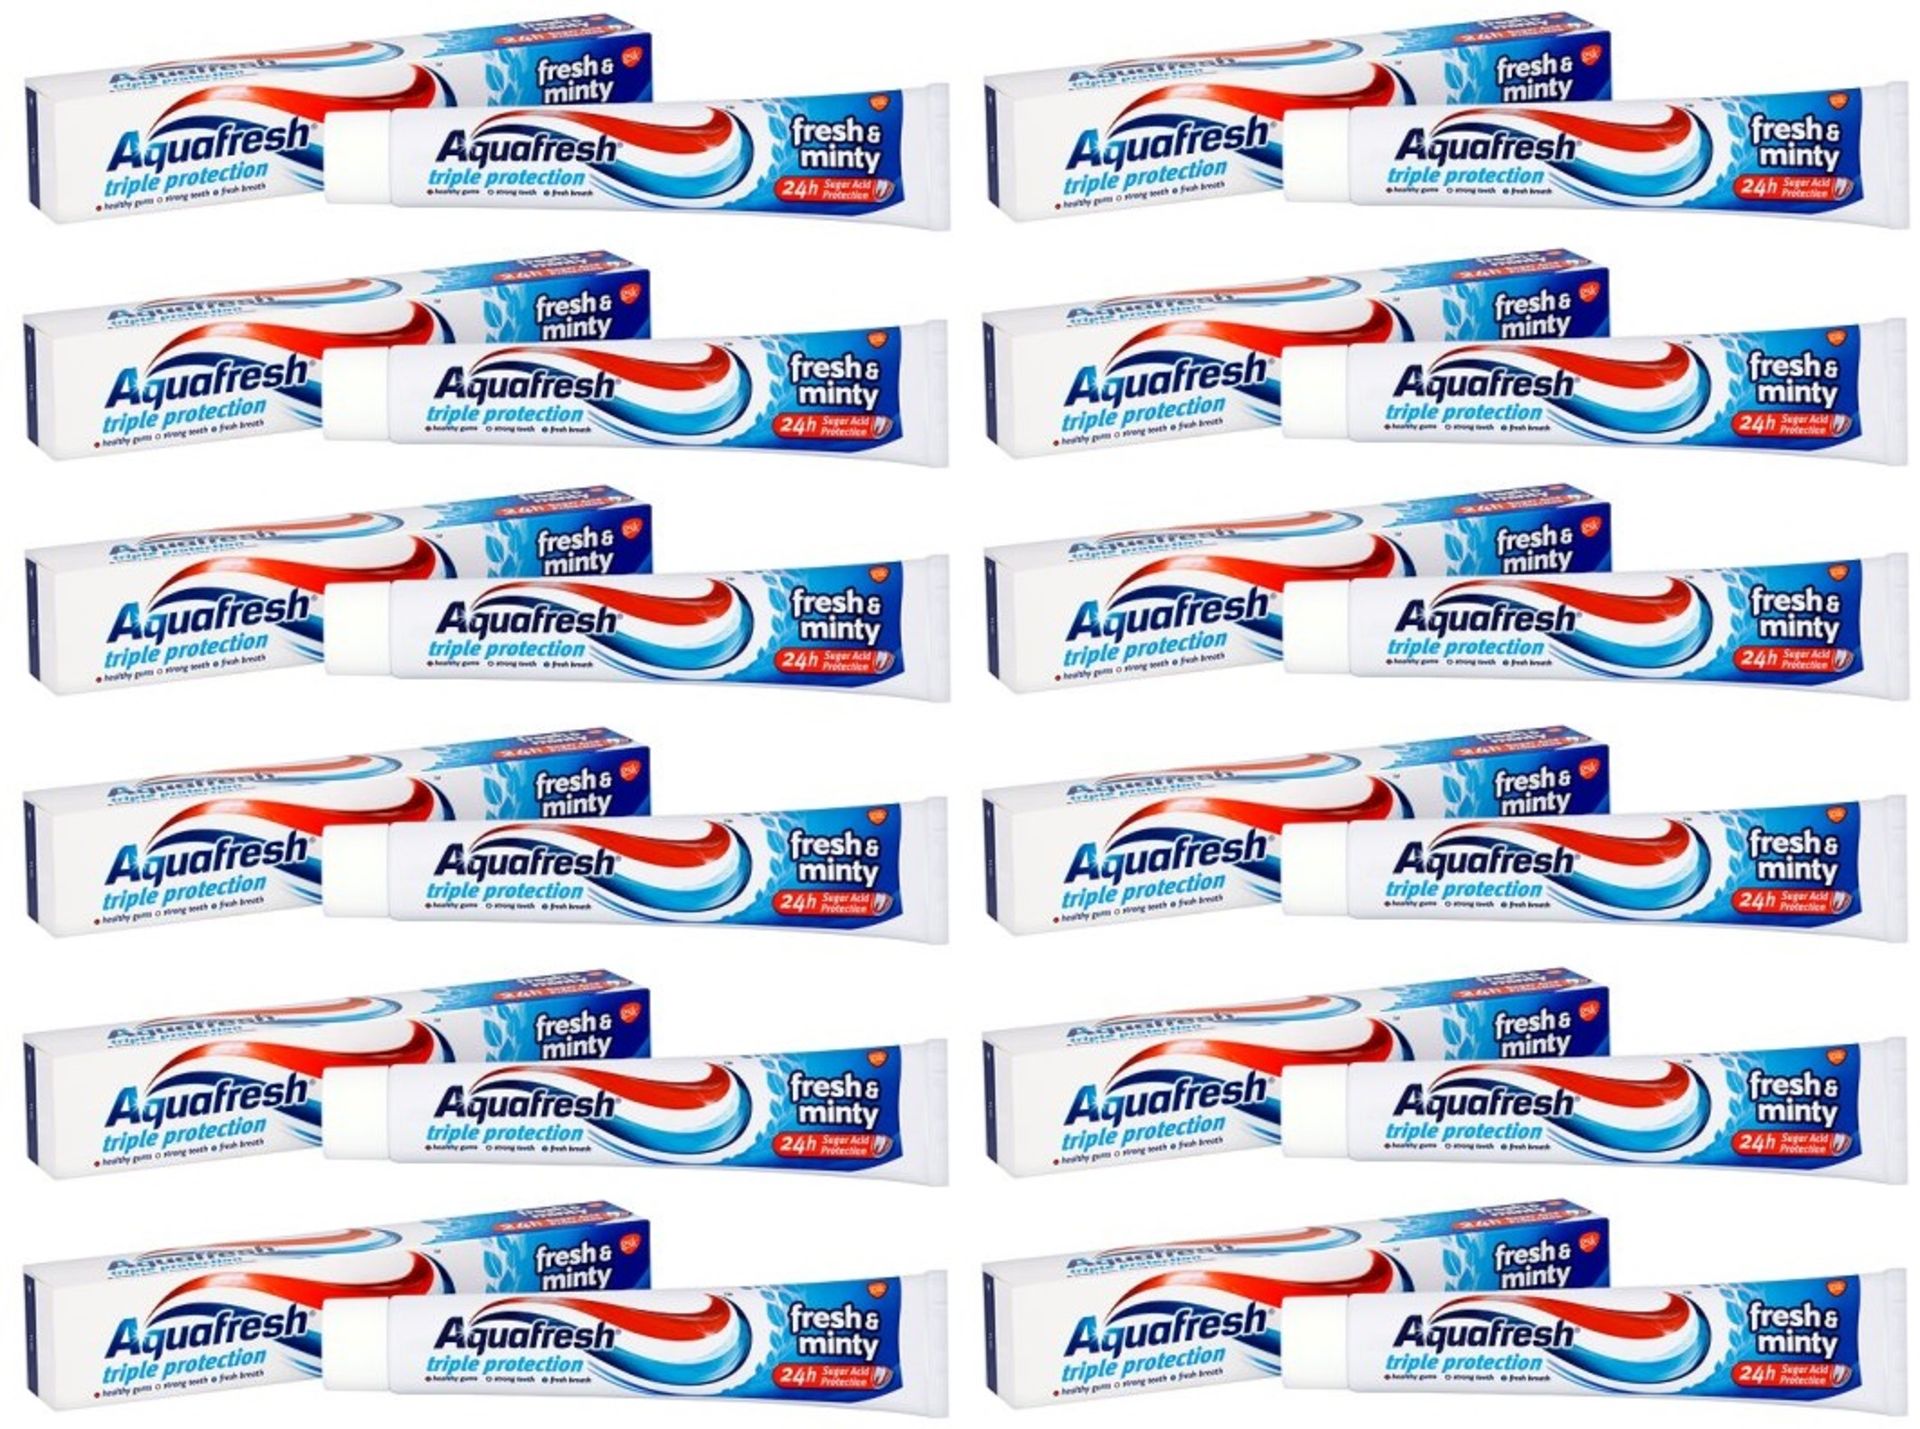 V Brand New 12 Tubes Aquafresh Toothpaste Fresh & Minty 75ml Amazon Price £26.64